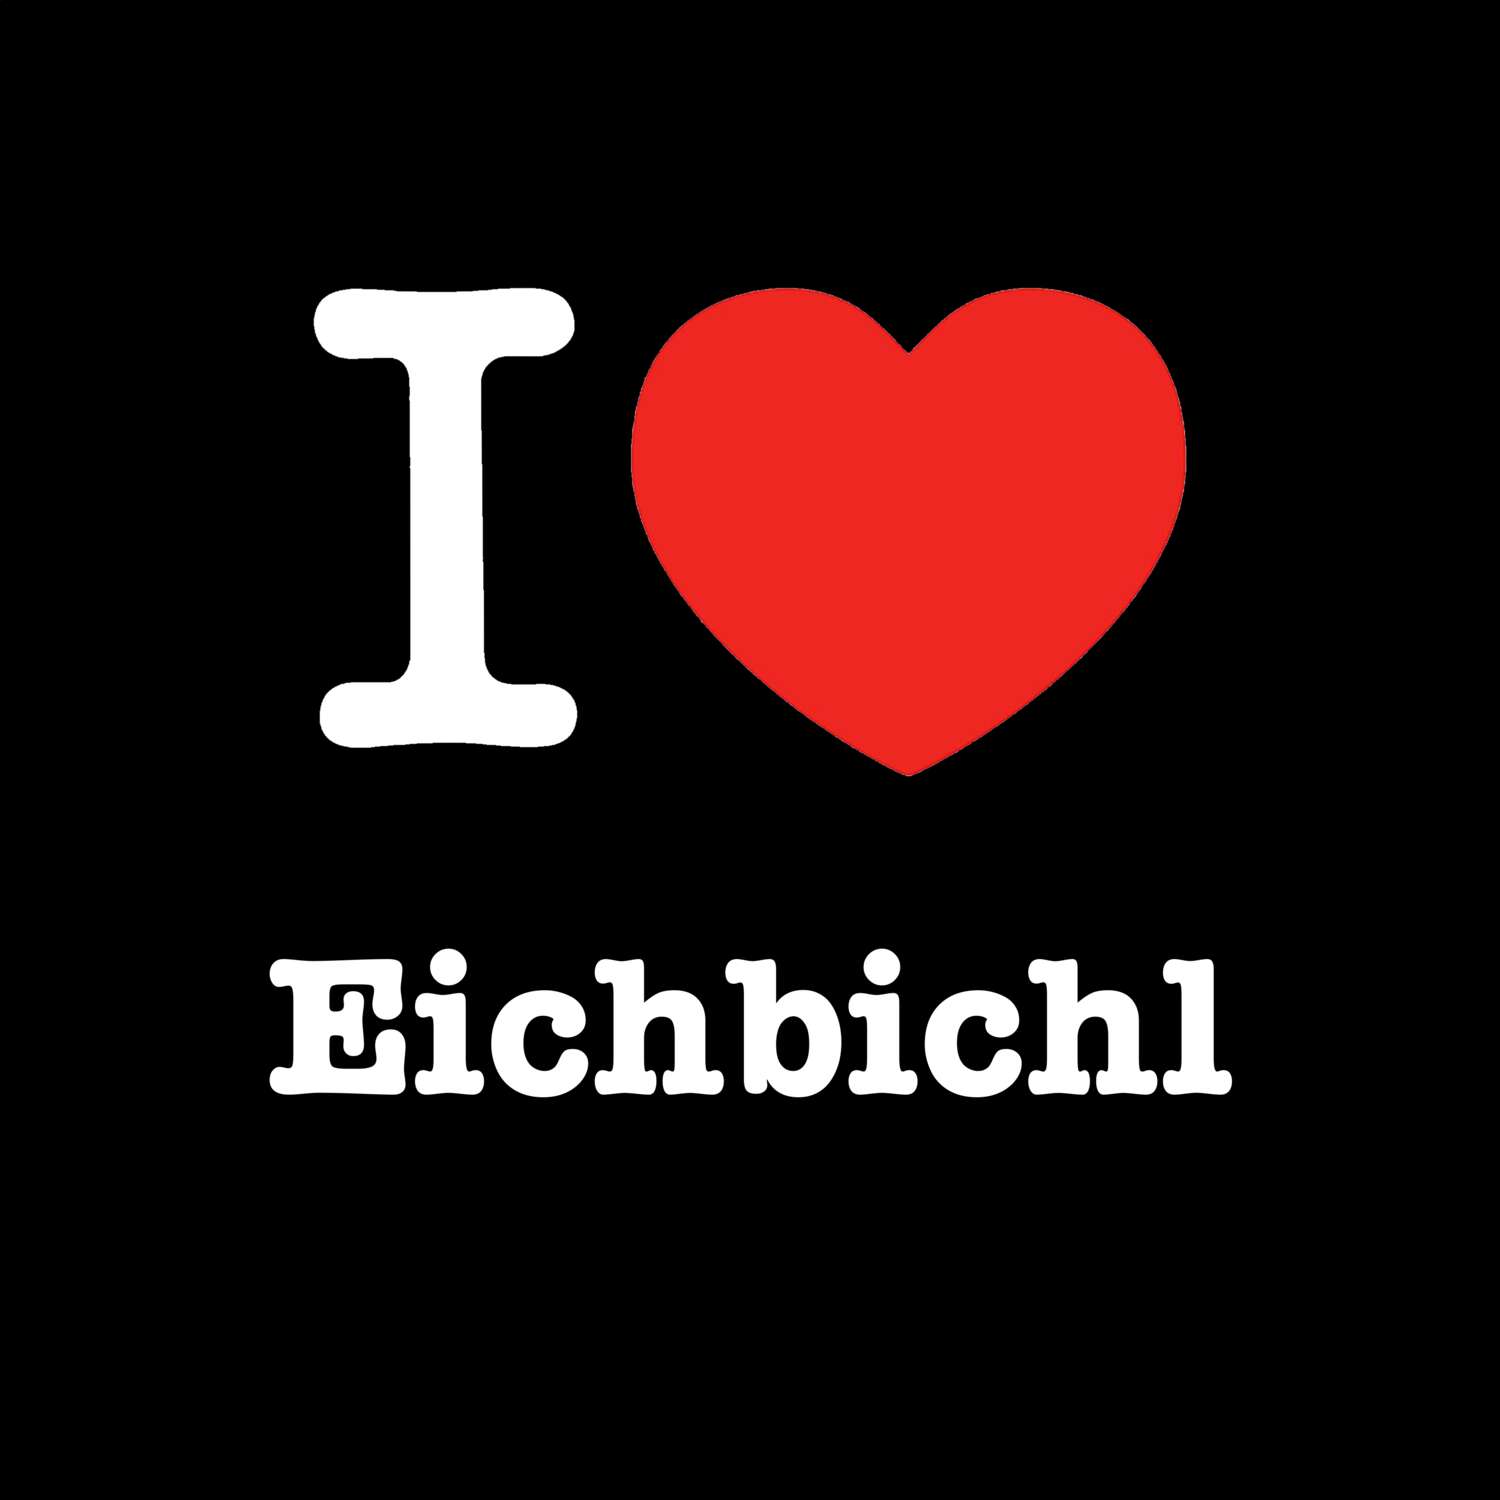 Eichbichl T-Shirt »I love«